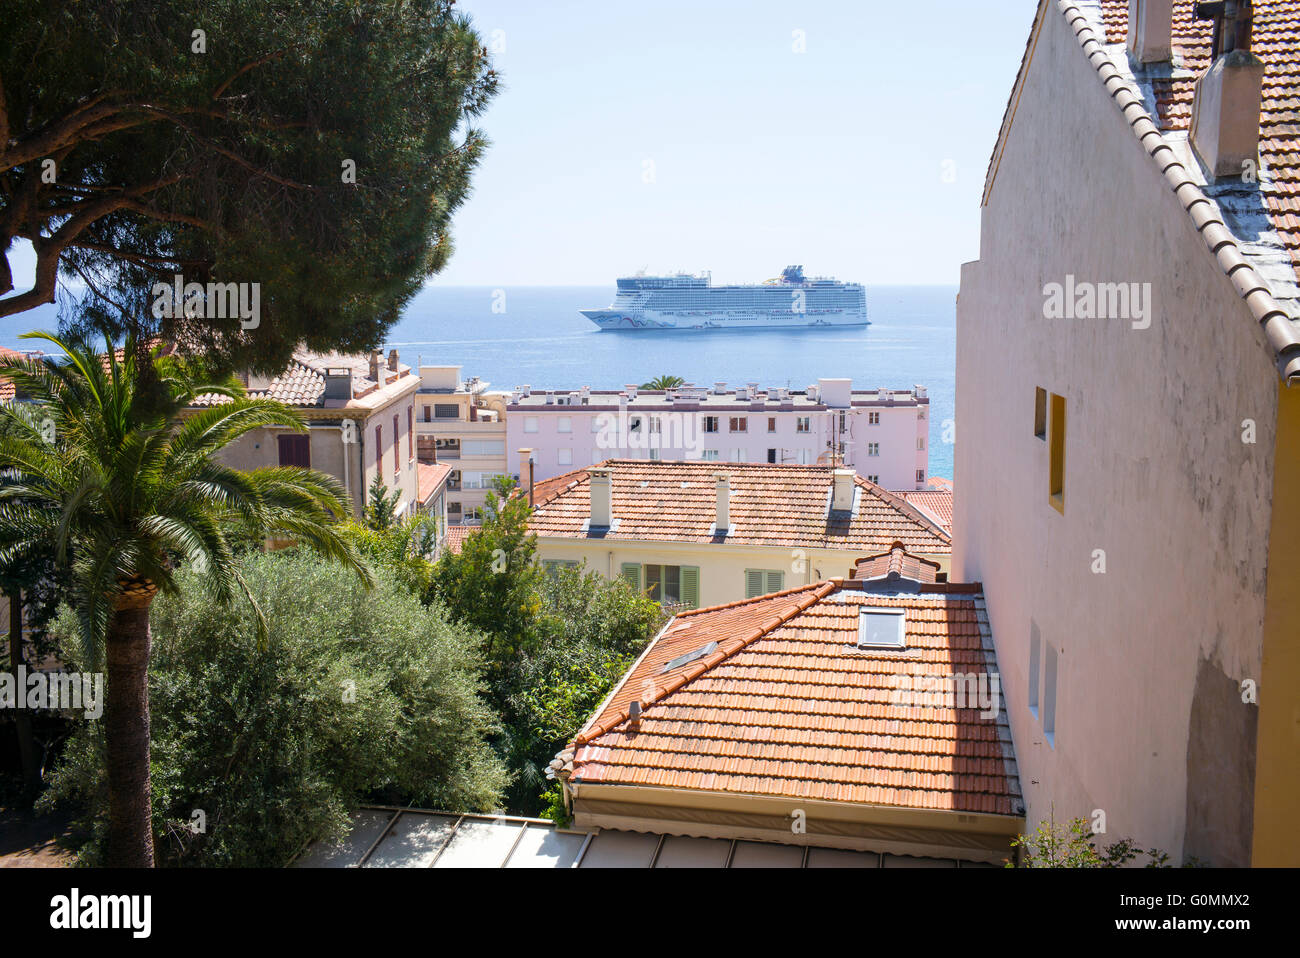 Una nave da crociera ormeggiata a Cannes, Francia, visto attraverso gli edifici nel quartiere della città vecchia di Le Suquet. Foto Stock